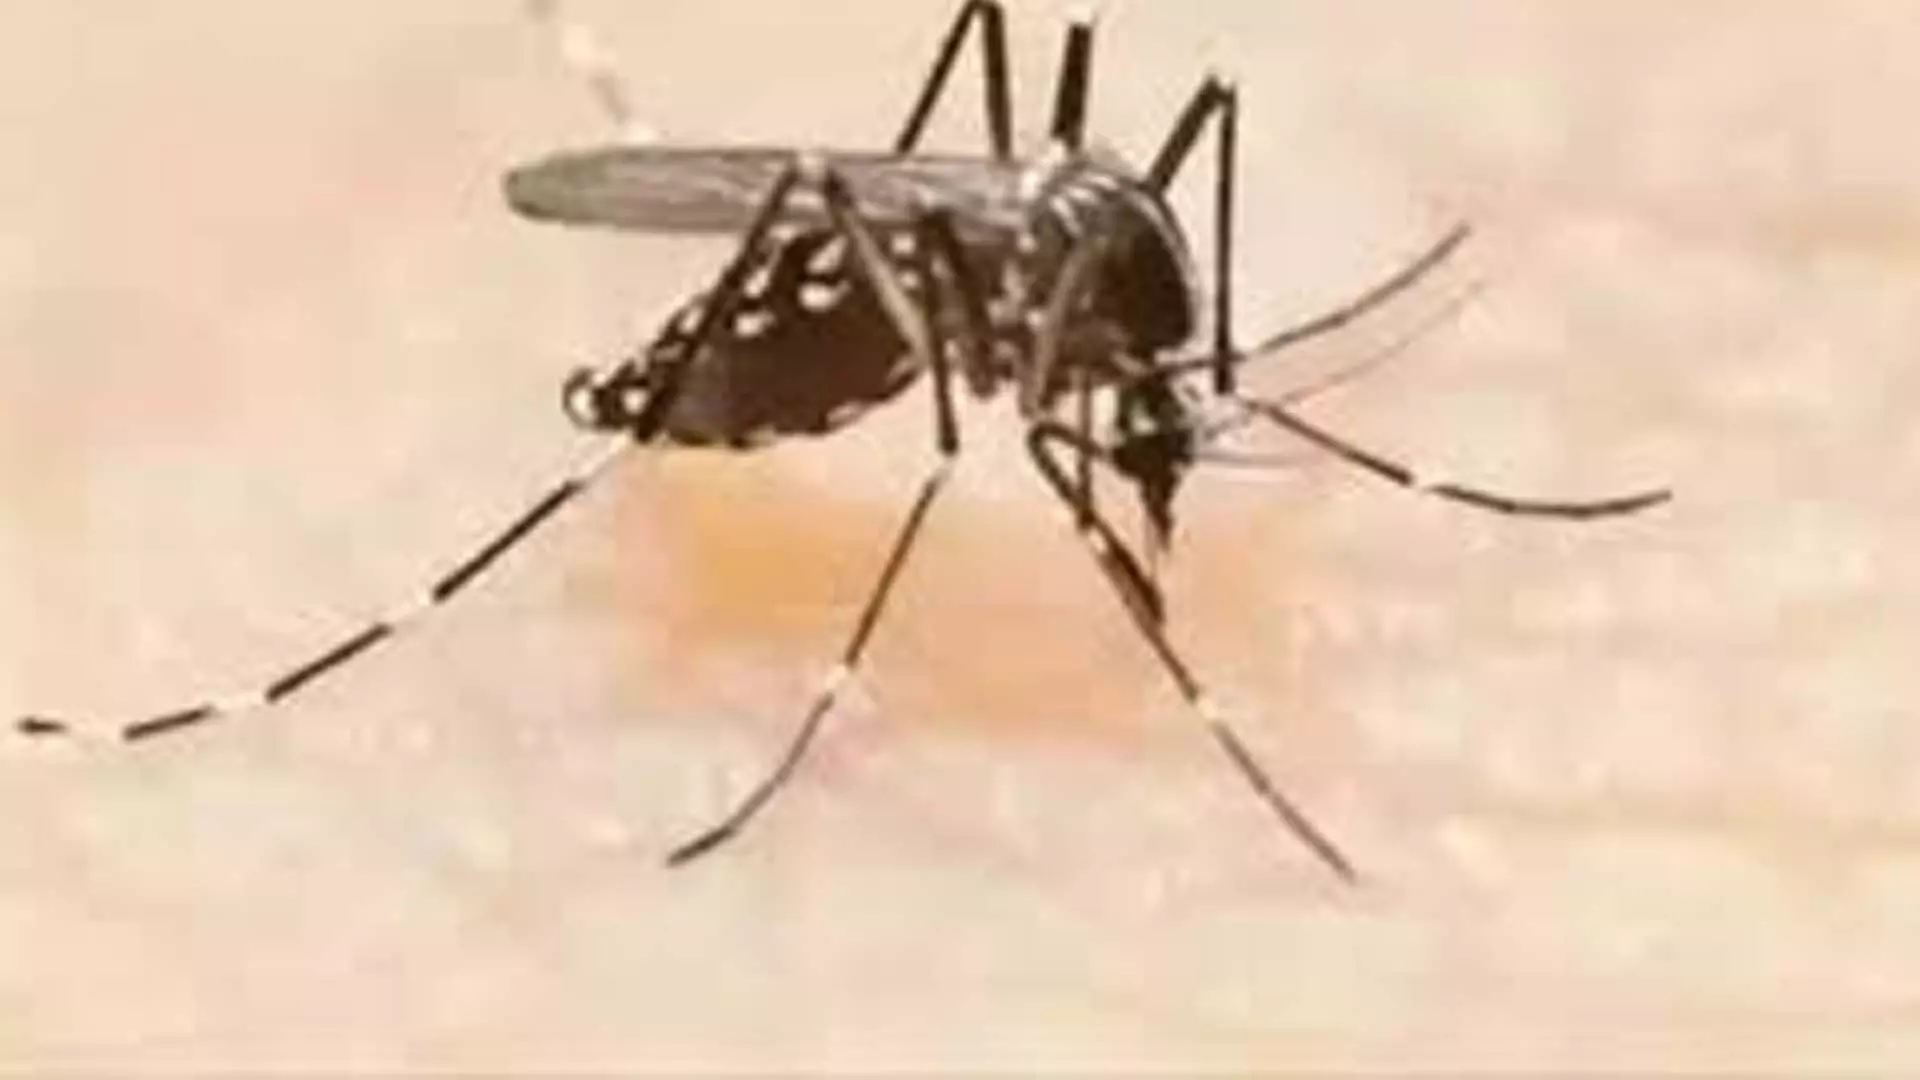 Tamil Nadu News: तमिलनाडु में 15 दिनों में डेंगू से 1,000 से अधिक लोग प्रभावित